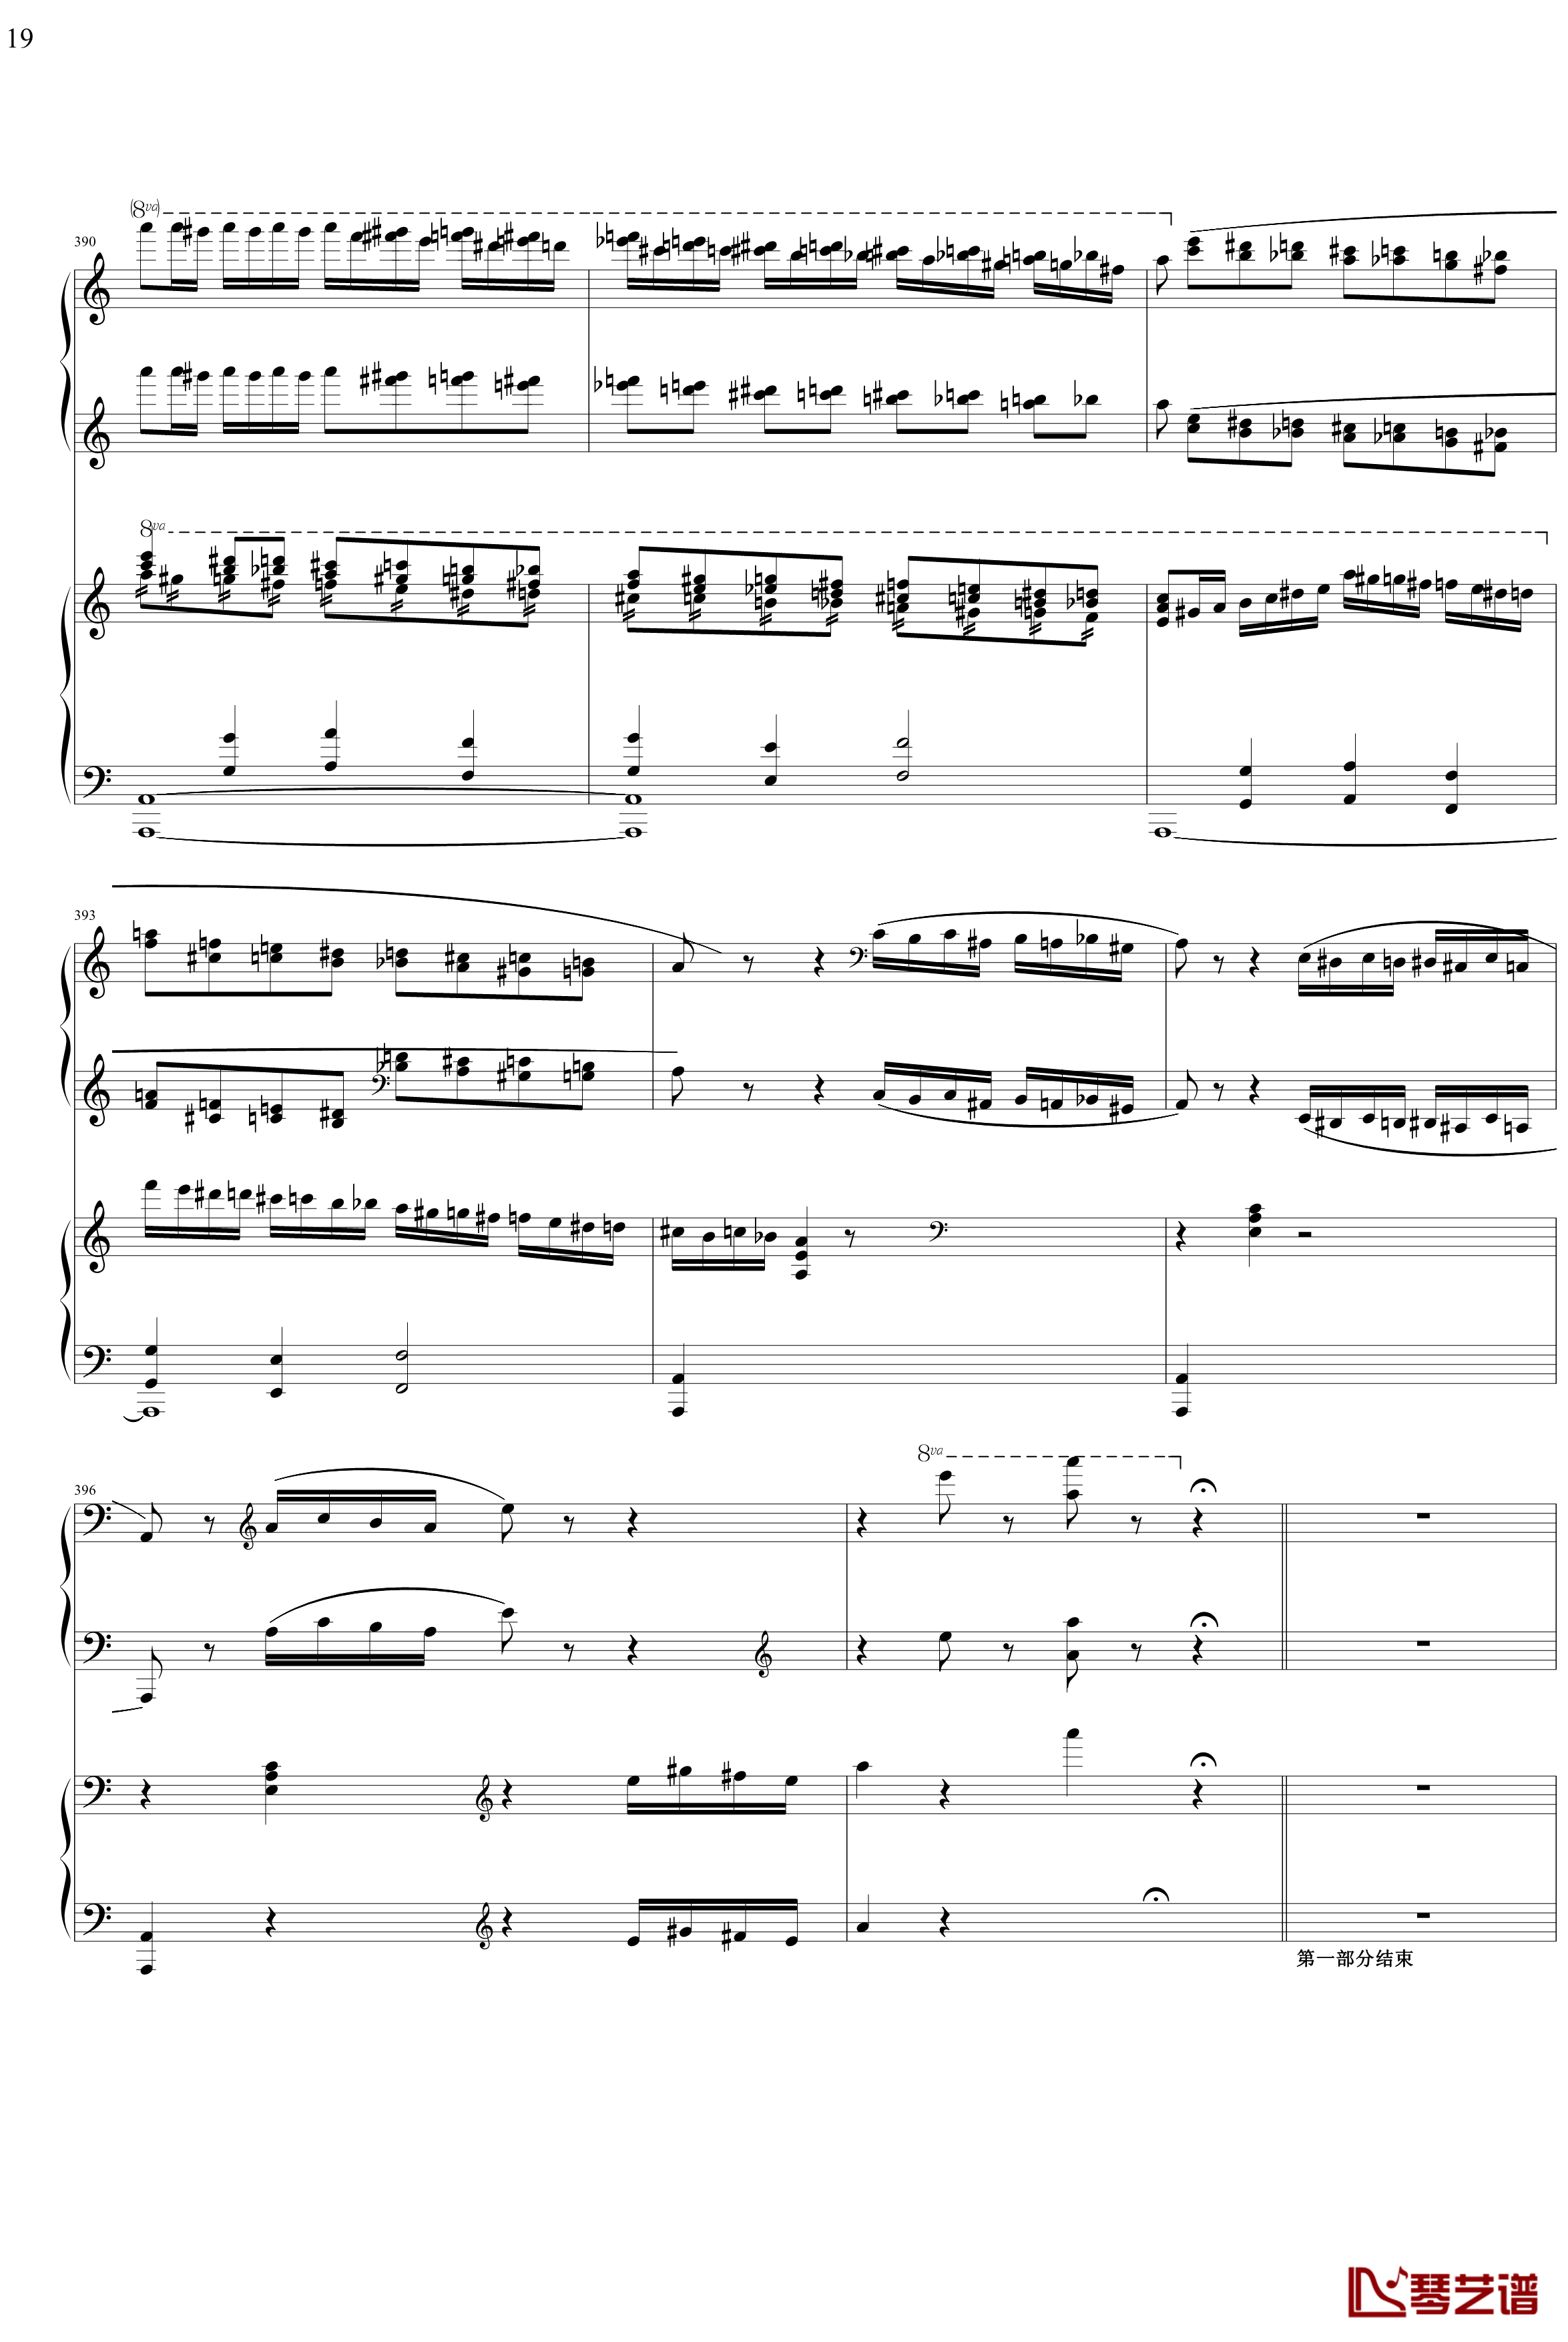 帕格尼主题狂想曲钢琴谱-1~10变奏-拉赫马尼若夫19